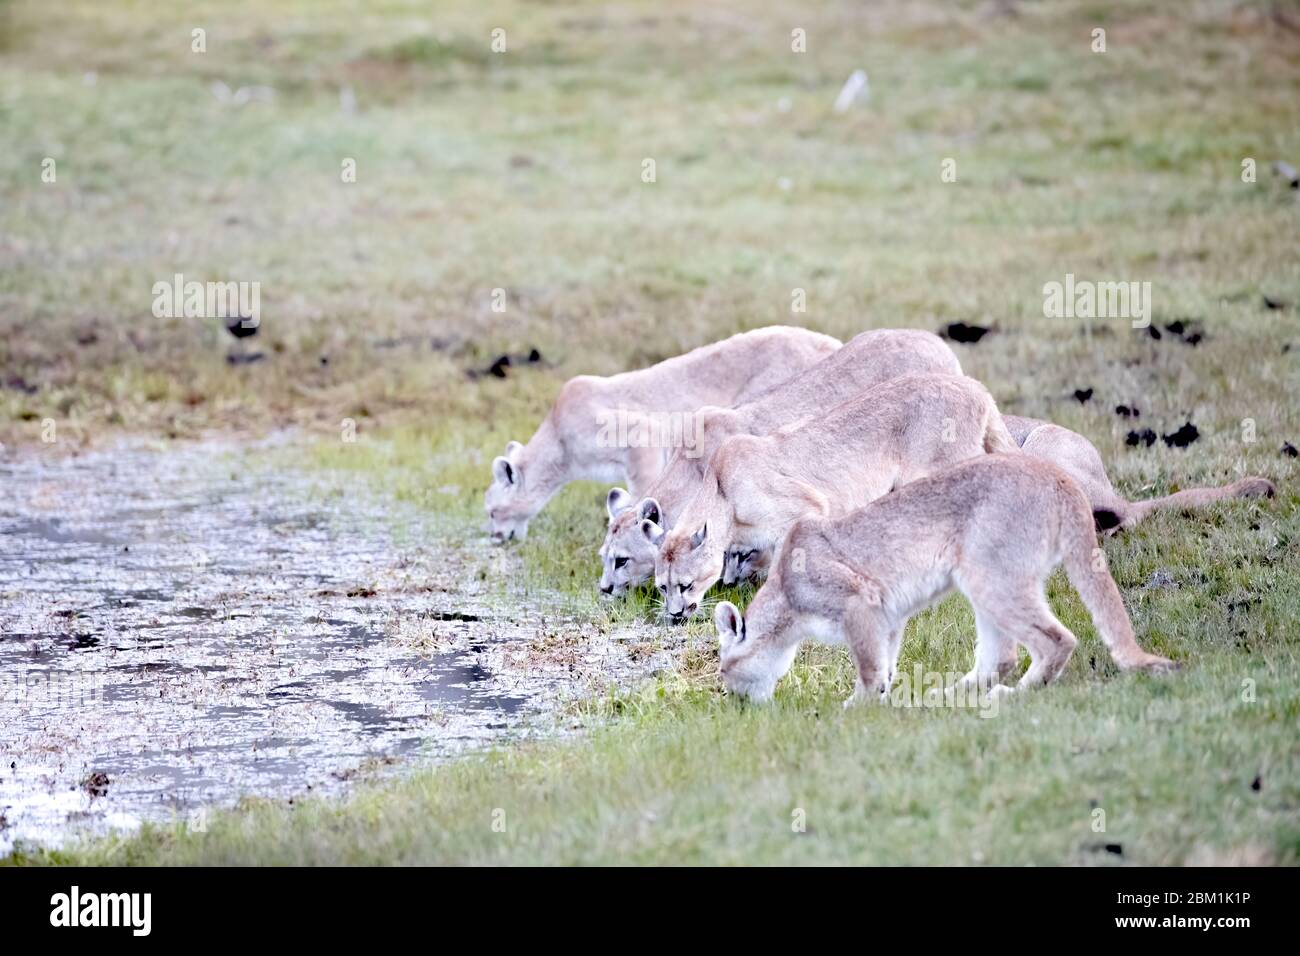 Familie von fünf Pumas, Mutter und Jugendliche, aus einem Pool trinken. Auch bekannt als Cougar oder Berglöwe. Stockfoto